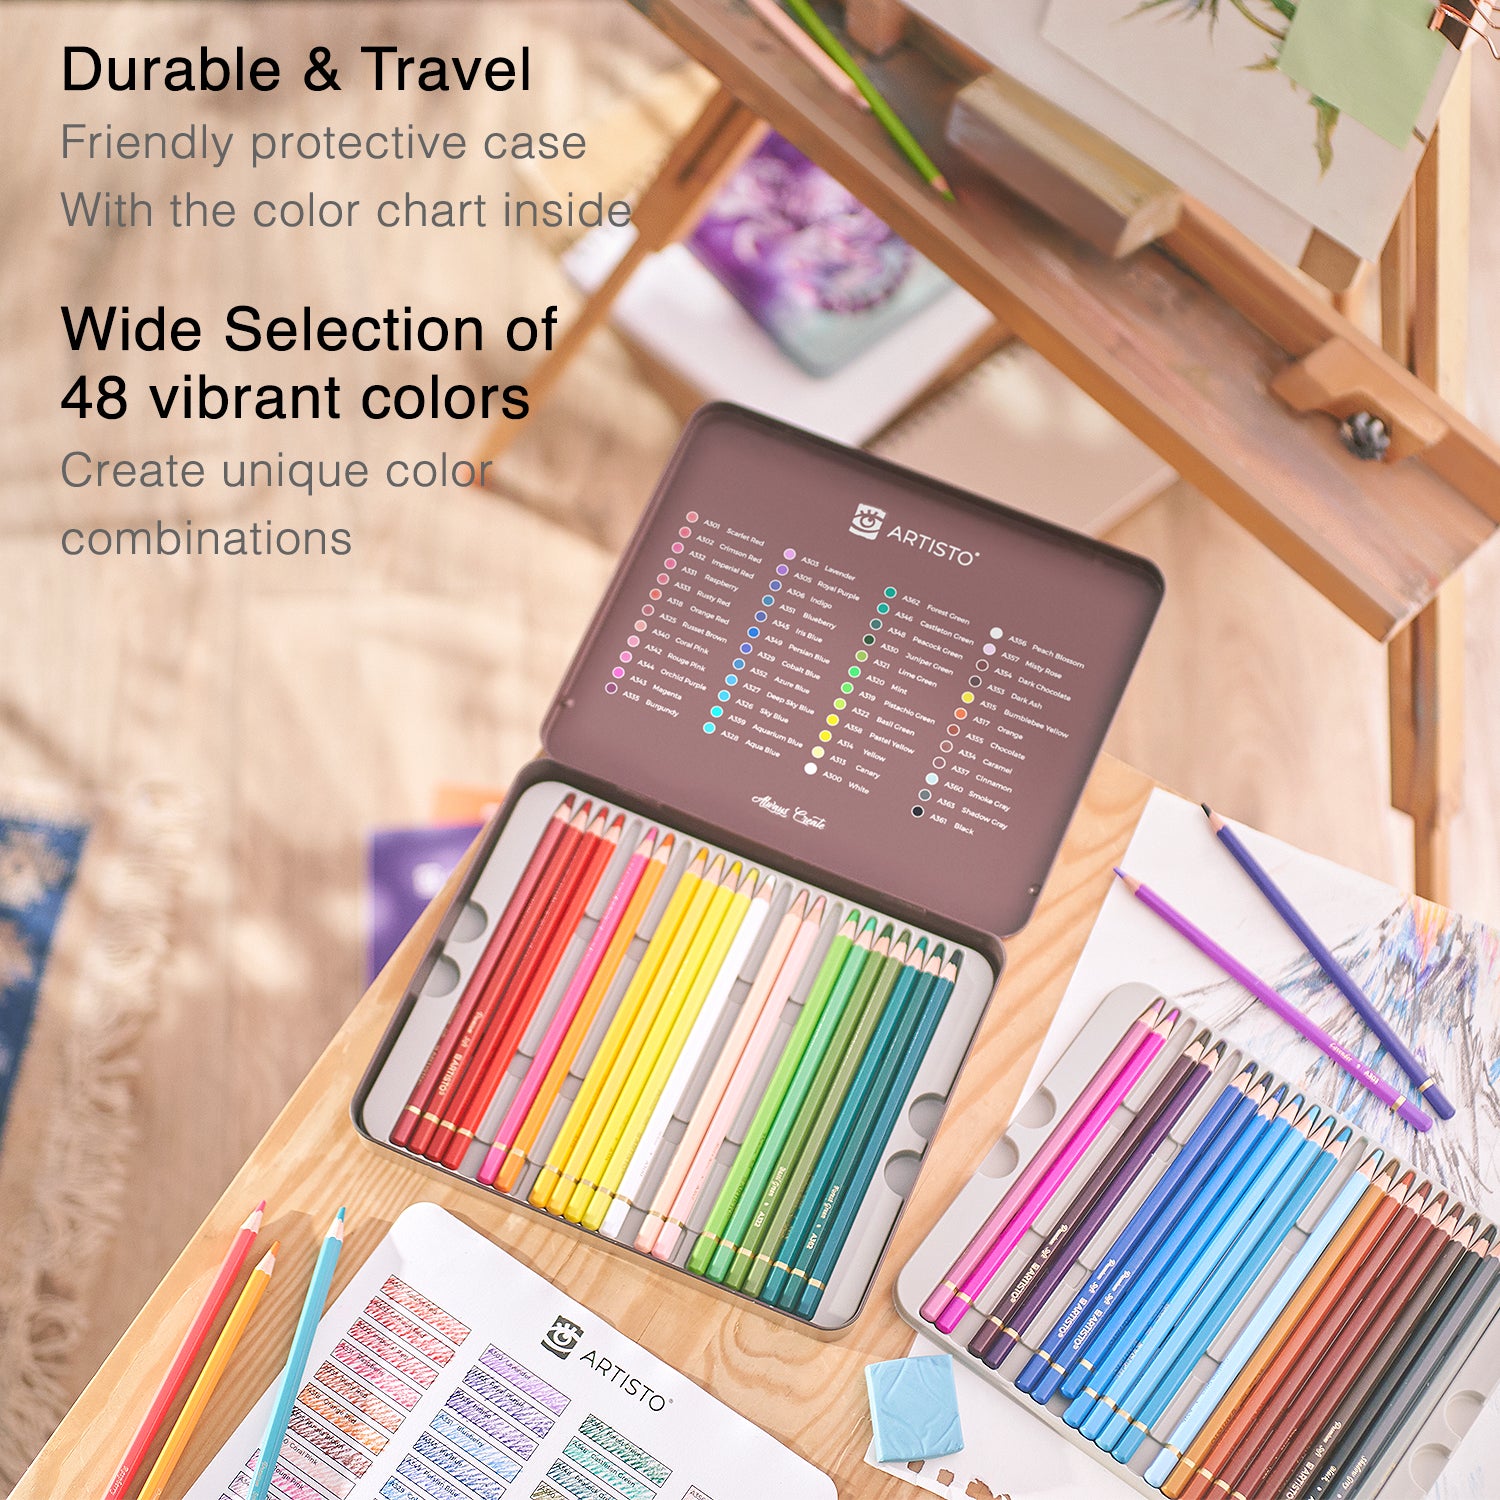 Brustro Artists' Soft Pastels Set of 48 - Captivating Color Palette / Get  now ! – BrustroShop